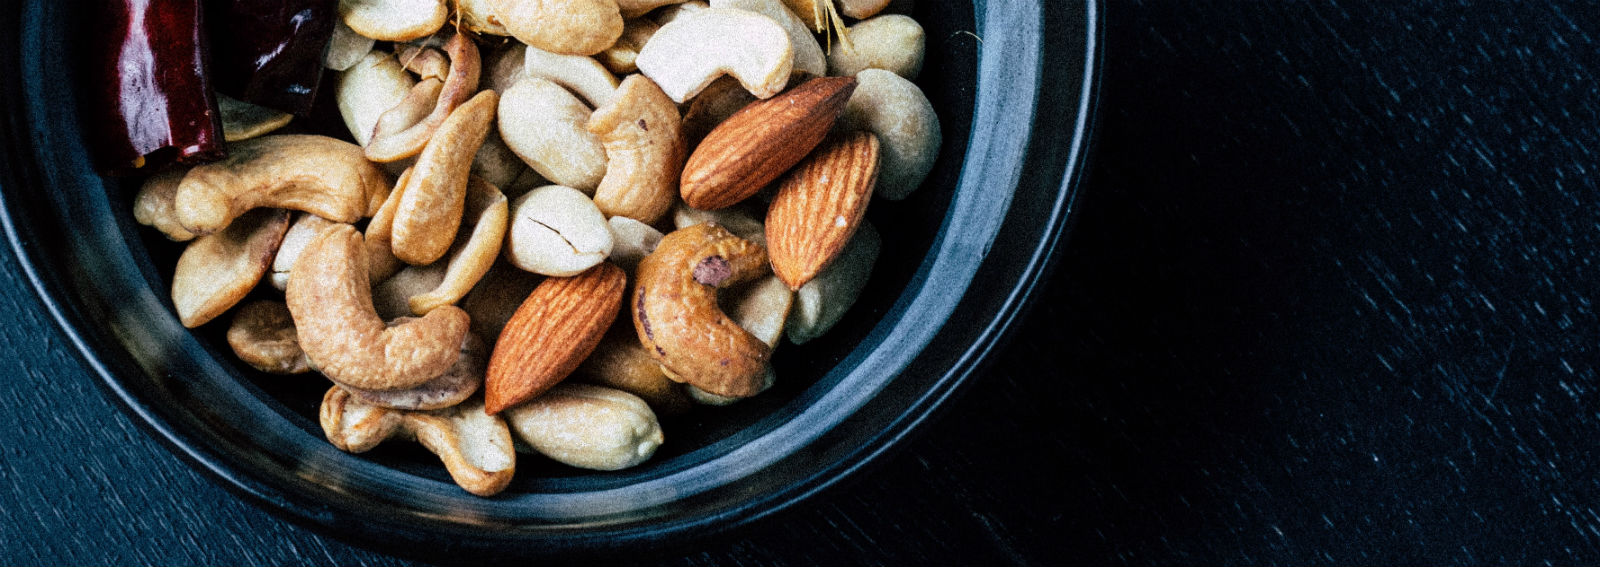 nuts-walnuts-health-food-diet-snack